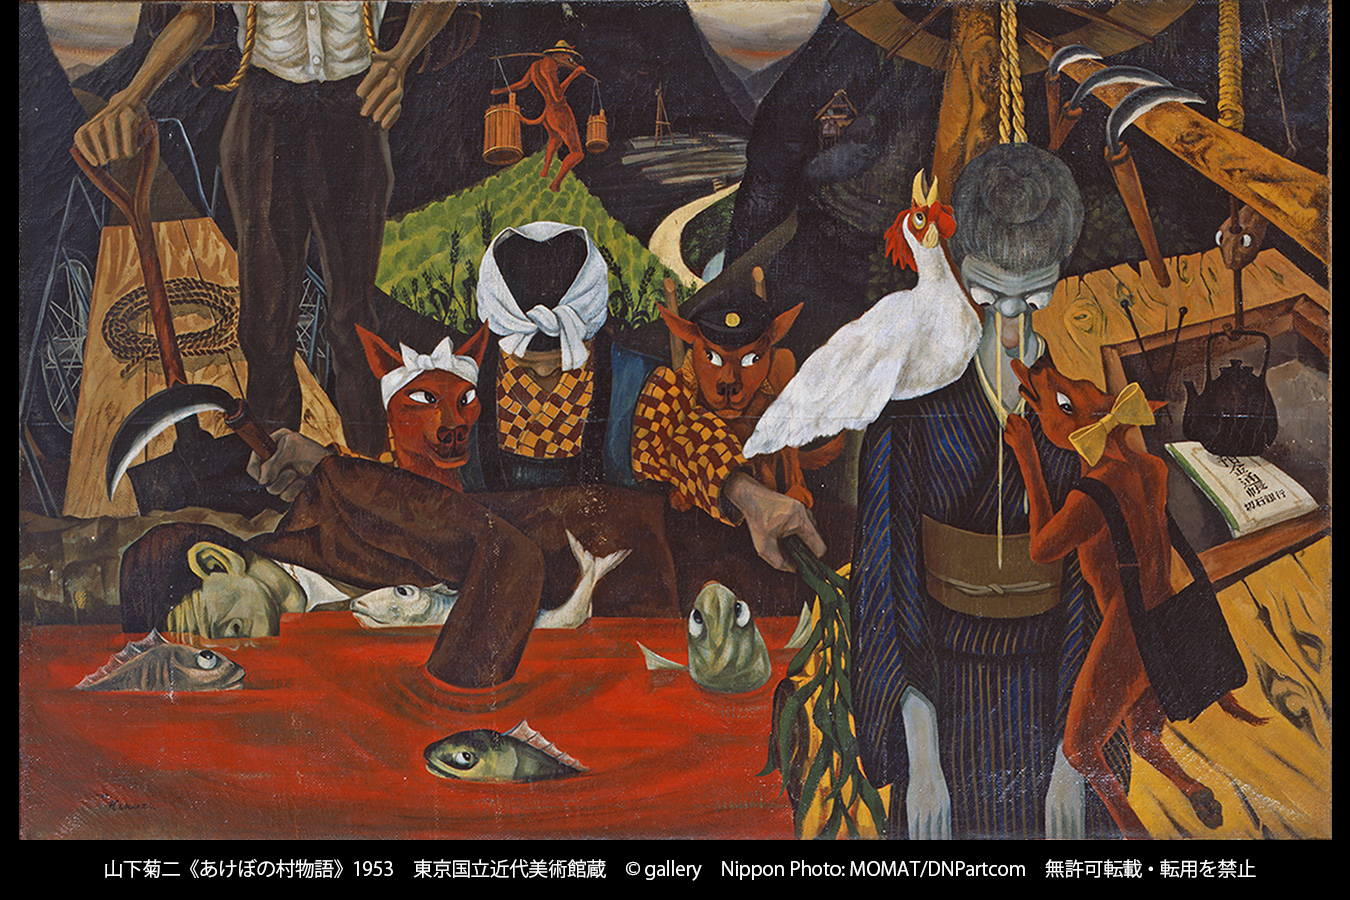 山下菊二画集 1919-1986 山下菊二画集刊行委員会著 美術出版社 1988年 